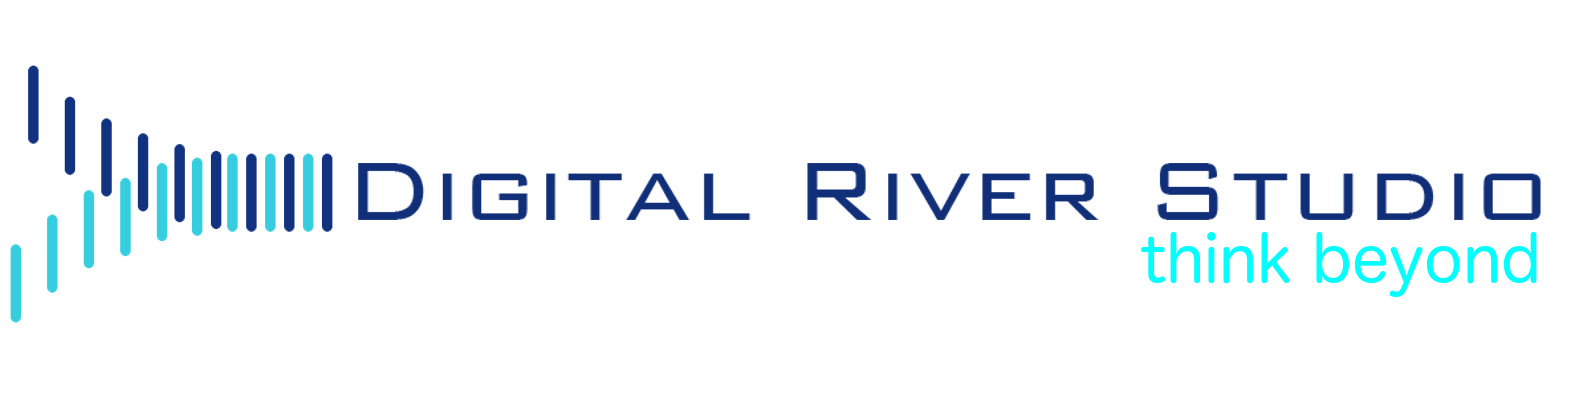 Digital River Studios